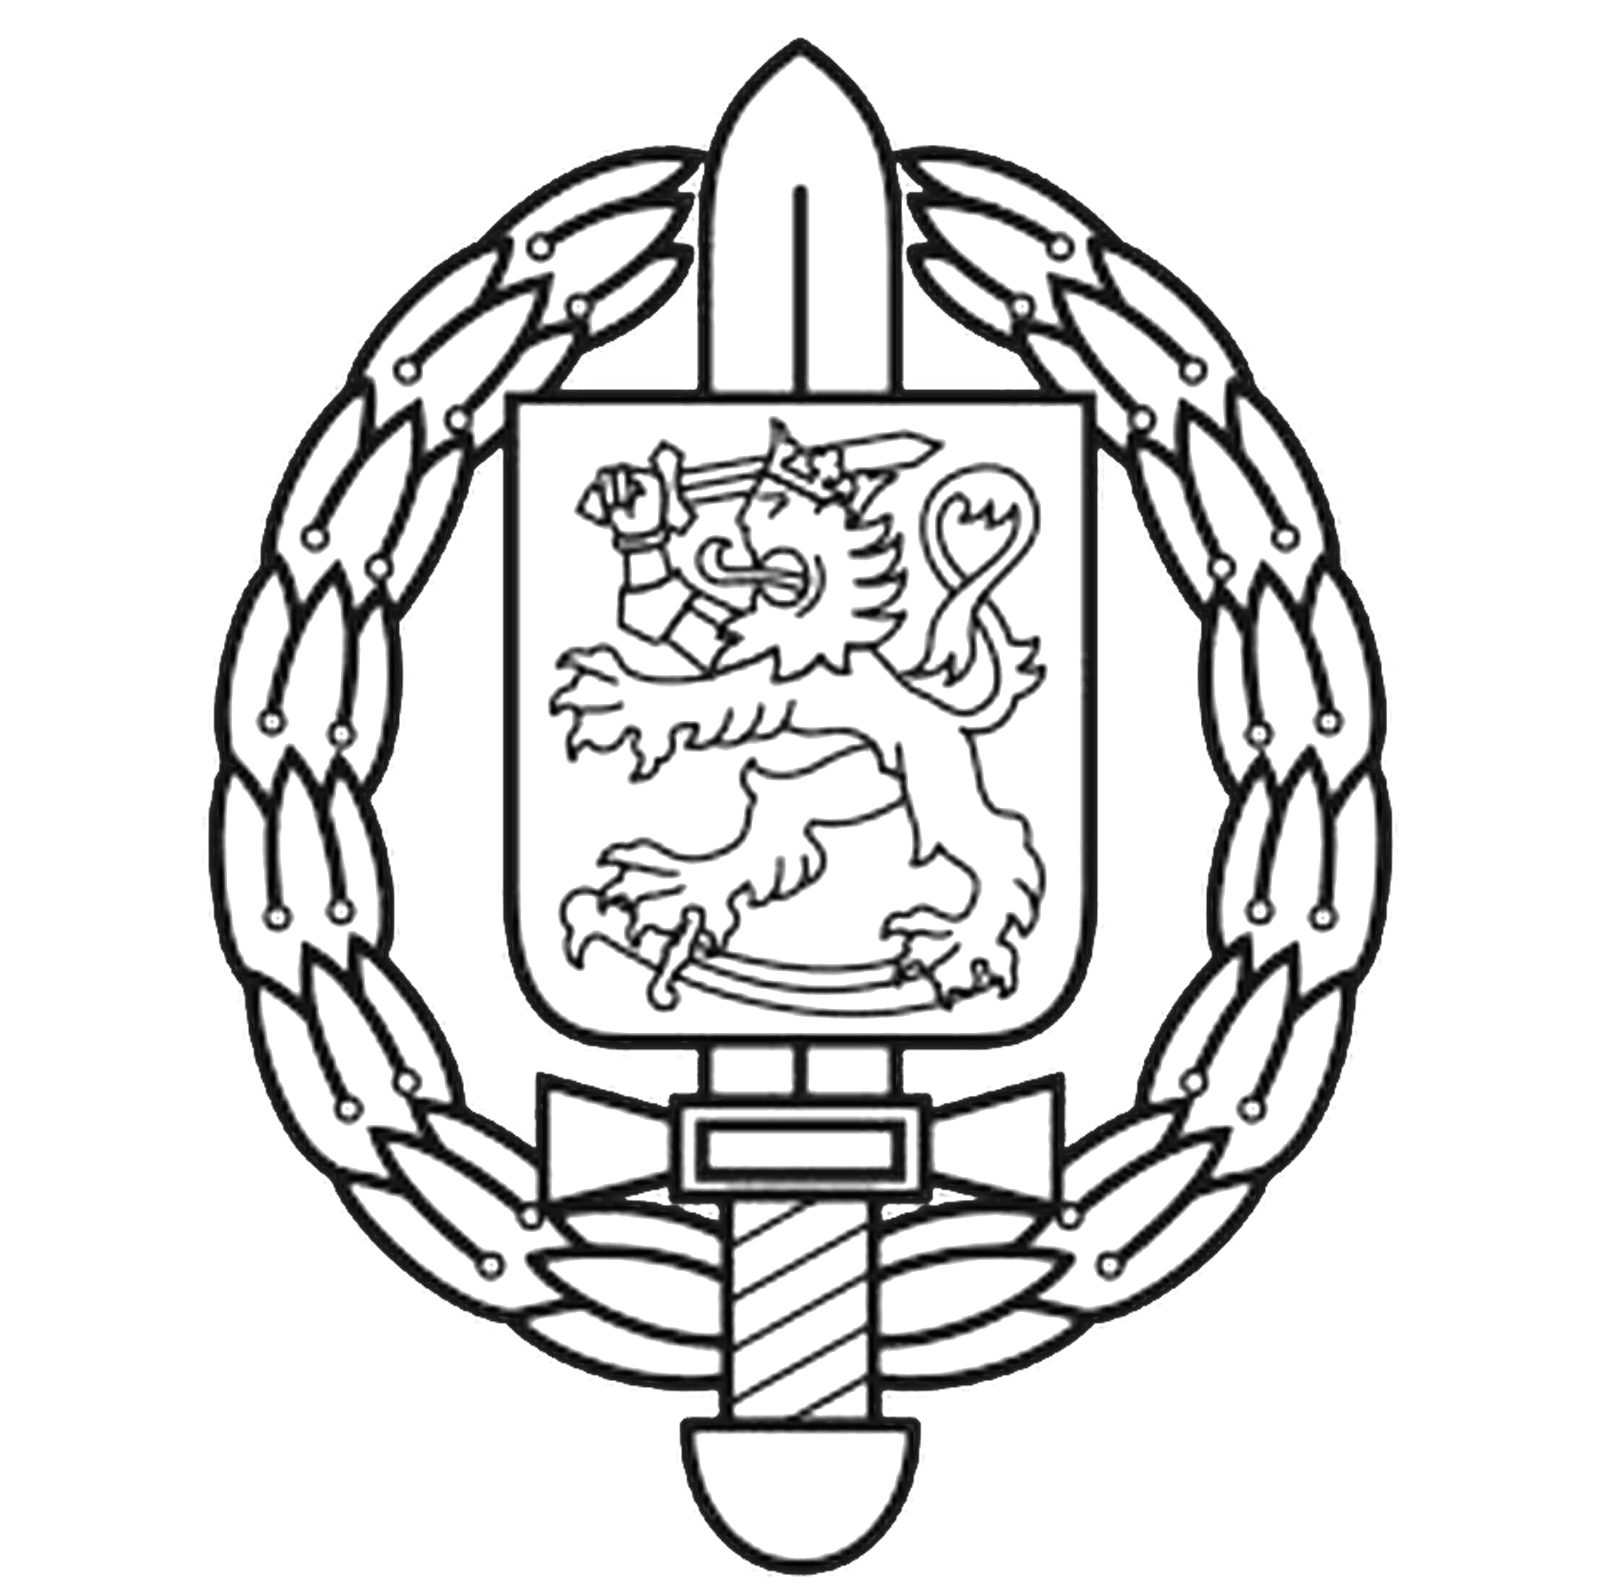 Krigsmuseets logo som avbildar Finlands lejon ovanpå ett svärd i en dekorativ ram